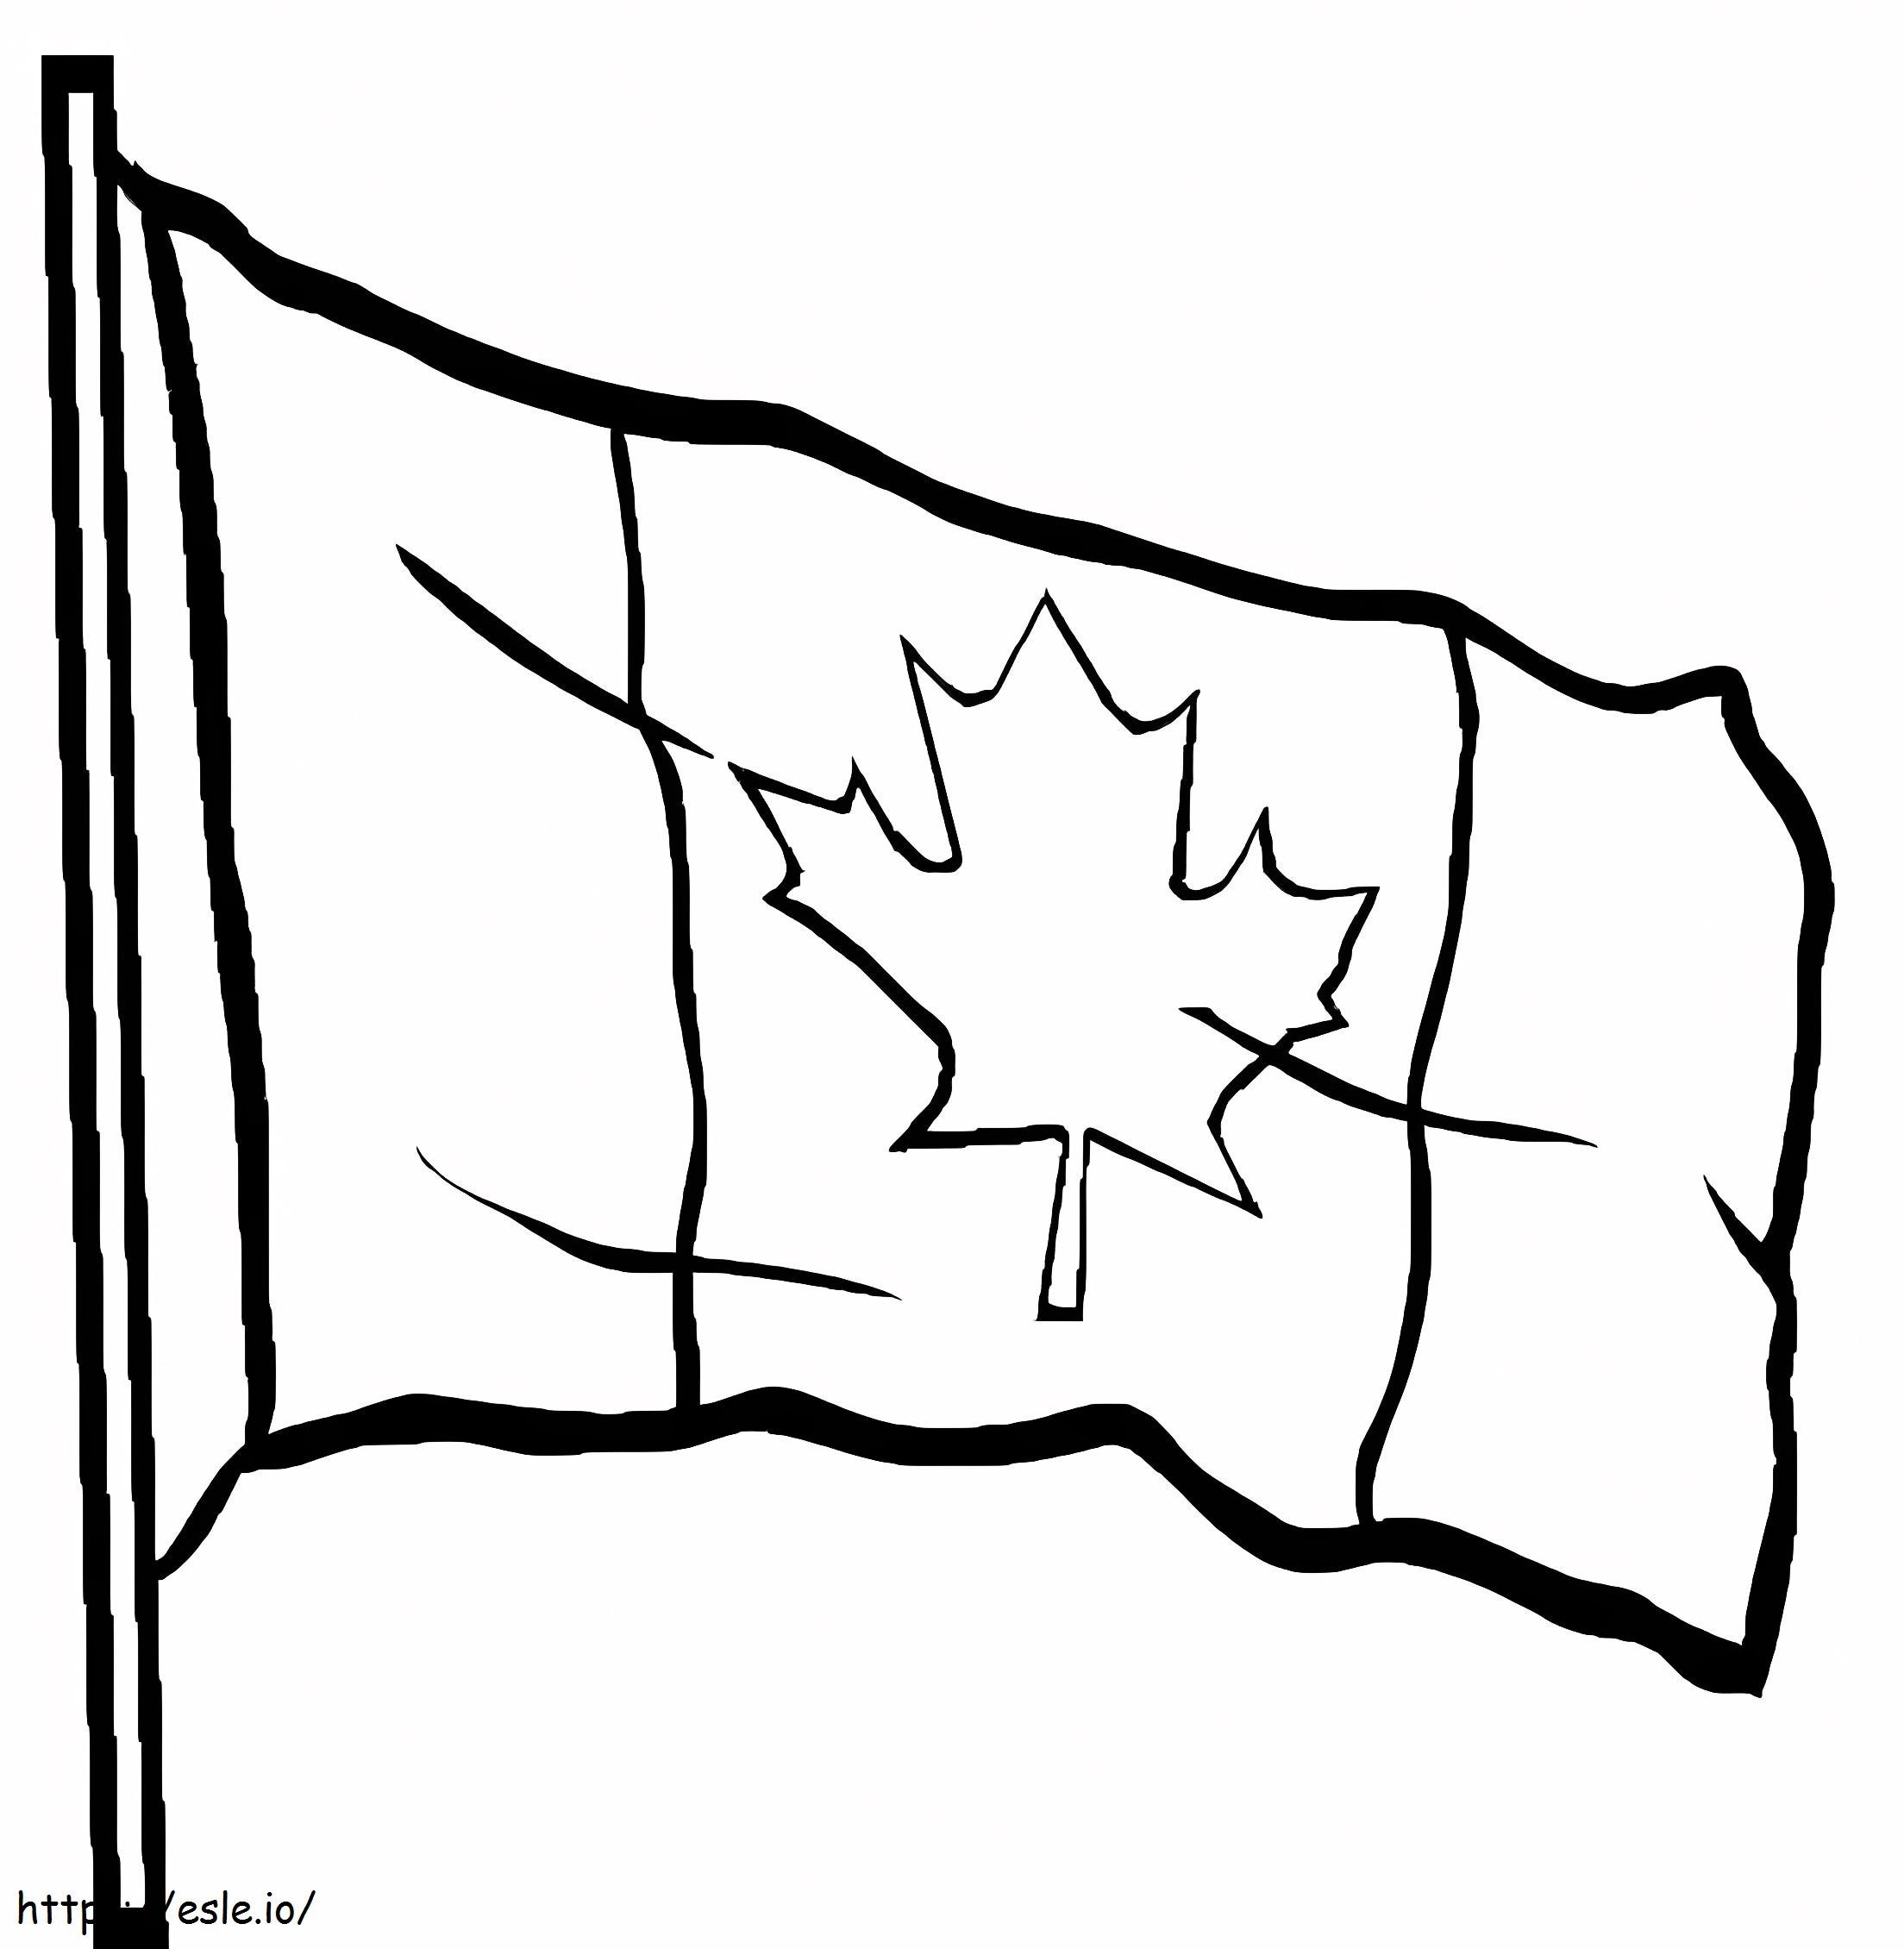 Kanadische Flagge 2 ausmalbilder